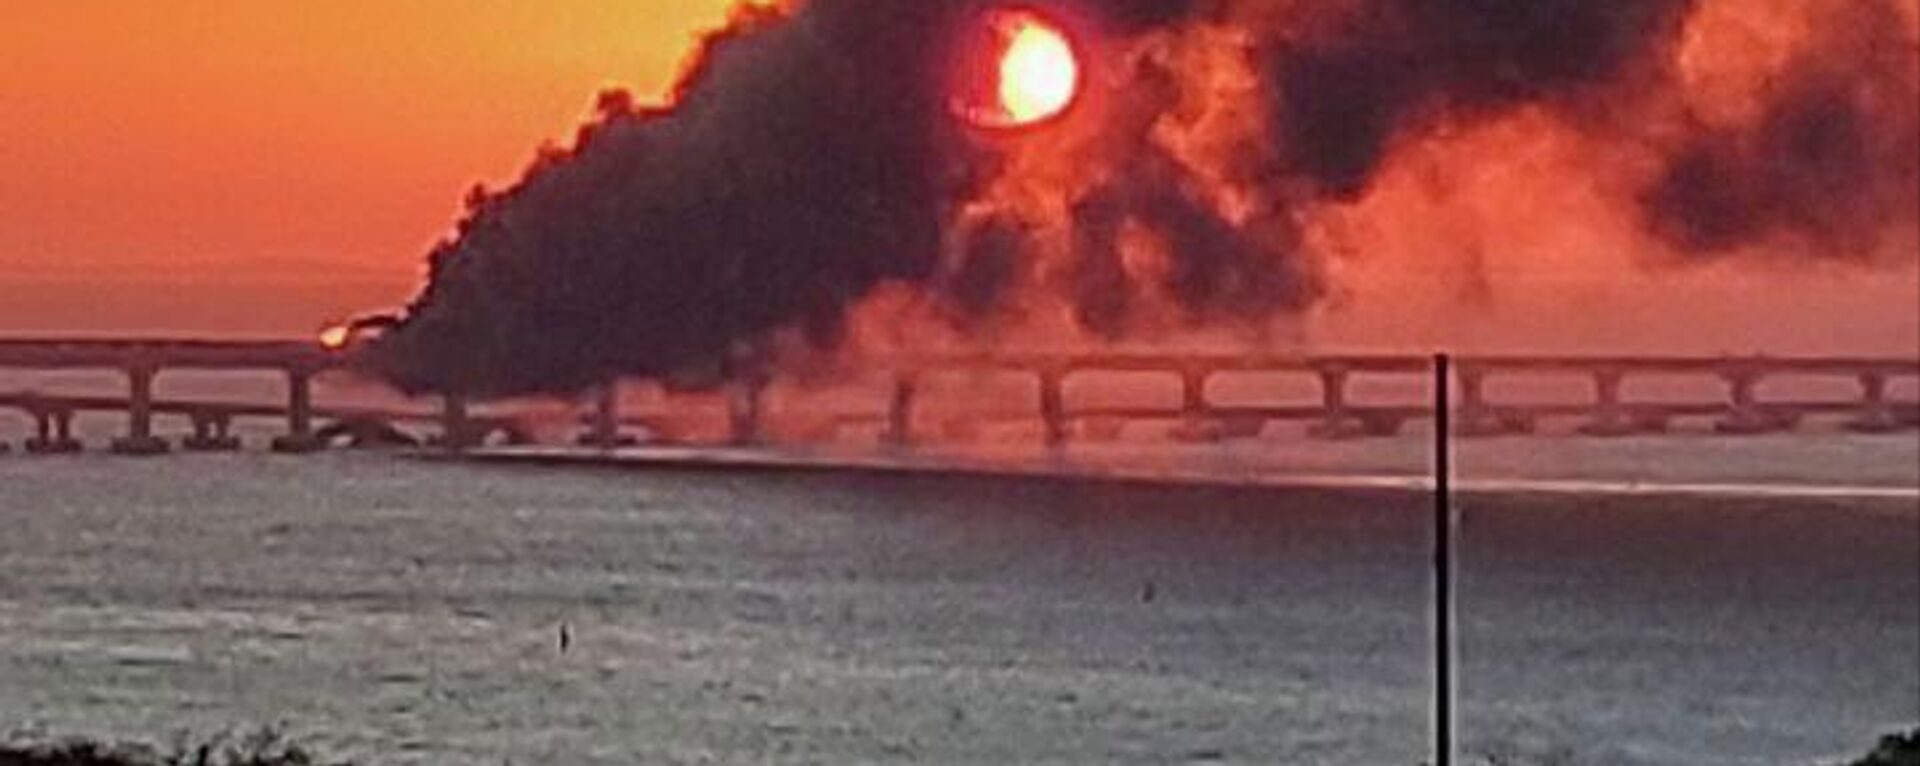 Пожар на крымском мосту, на автомобильной части которого со стороны Таманского полуострова произошел подрыв грузового автомобиля, повлекший за собой возгорание семи топливных цистерн железнодорожного состава - Sputnik International, 1920, 08.10.2022